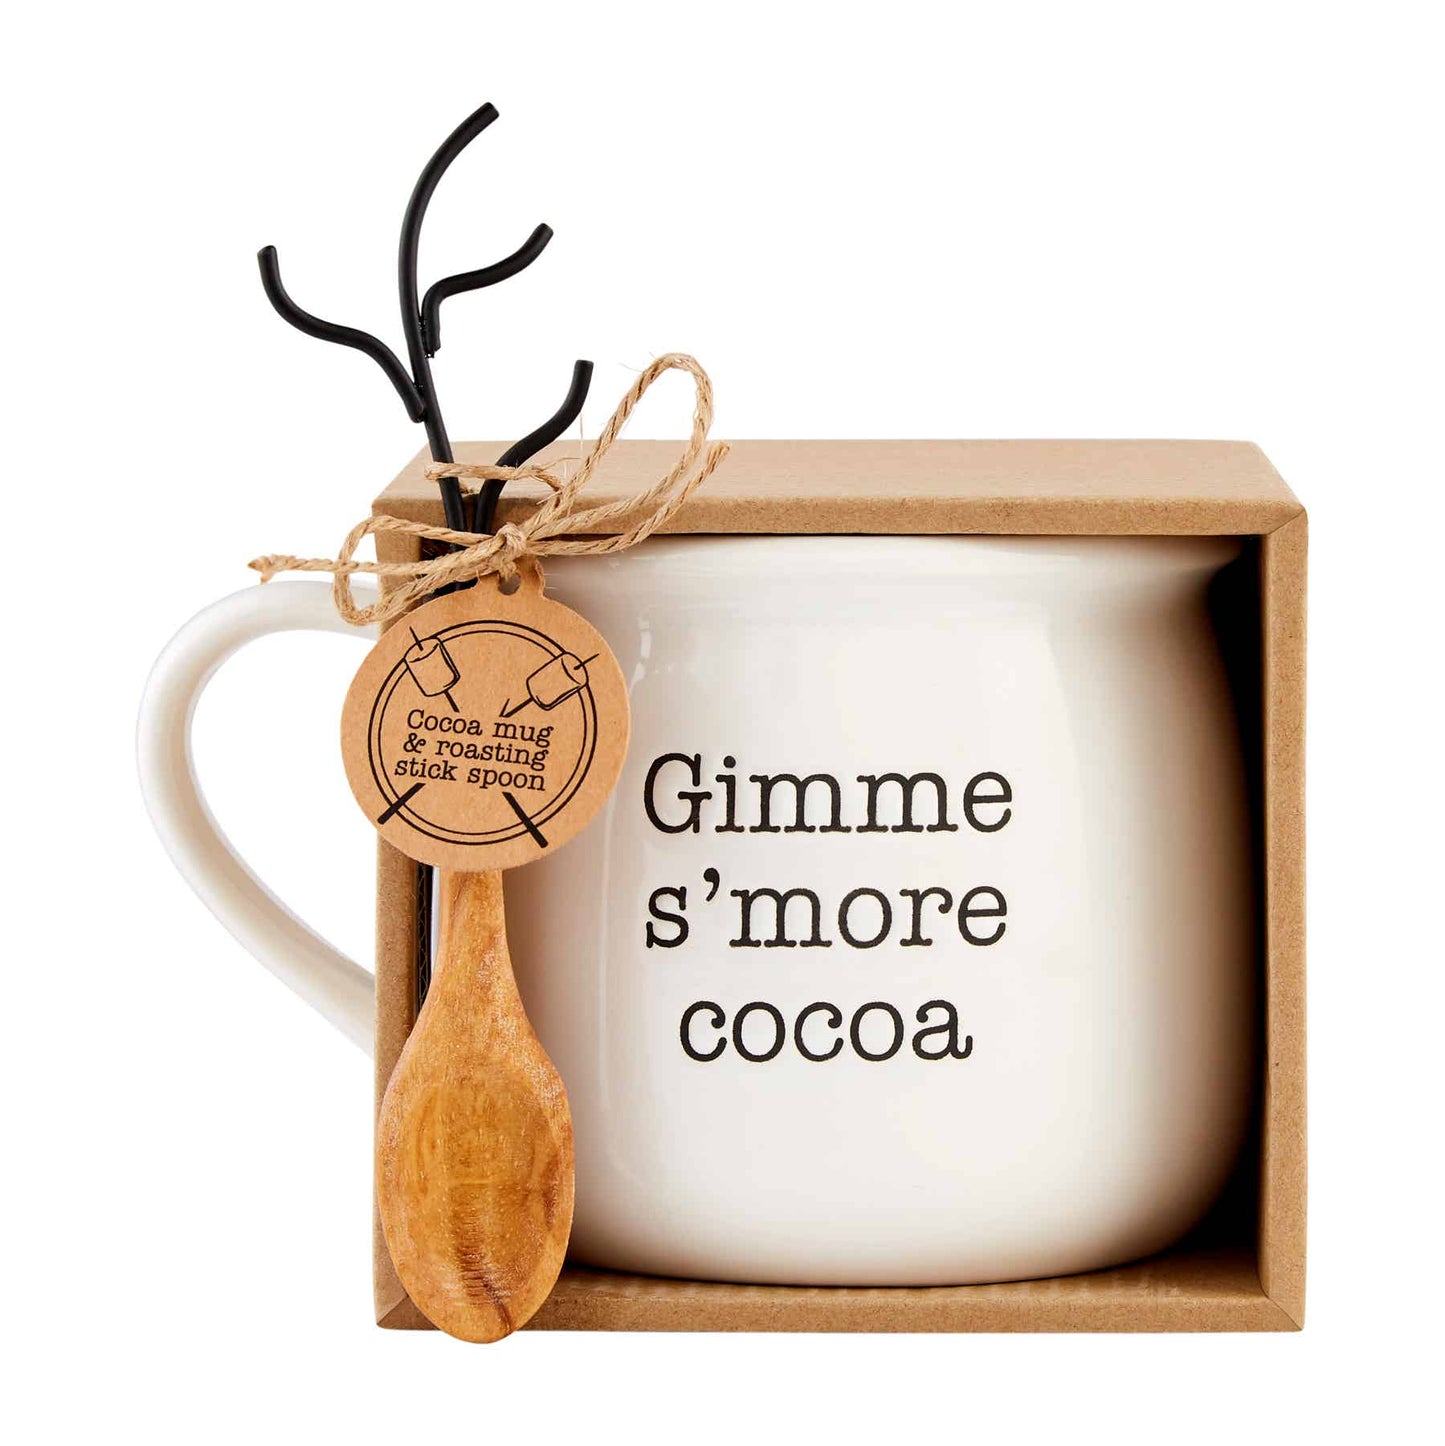 Gimme S'more Hot Chocolate Mug Set